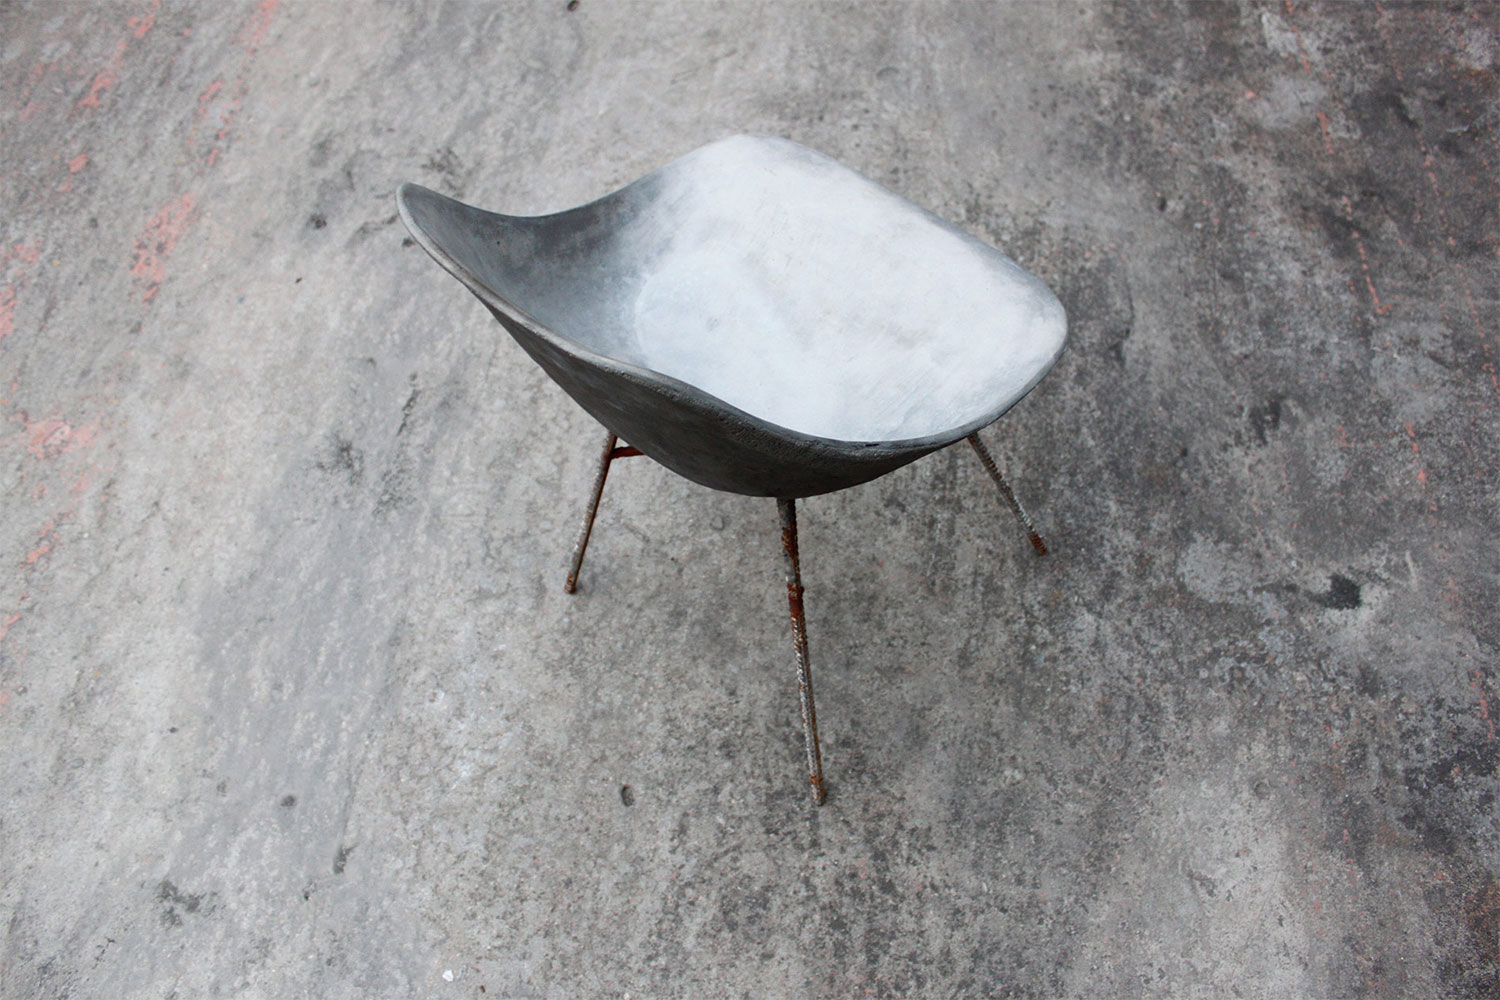 D'Hauteville Concrete Chair by Julie Legros & Henri Lavallard Boget